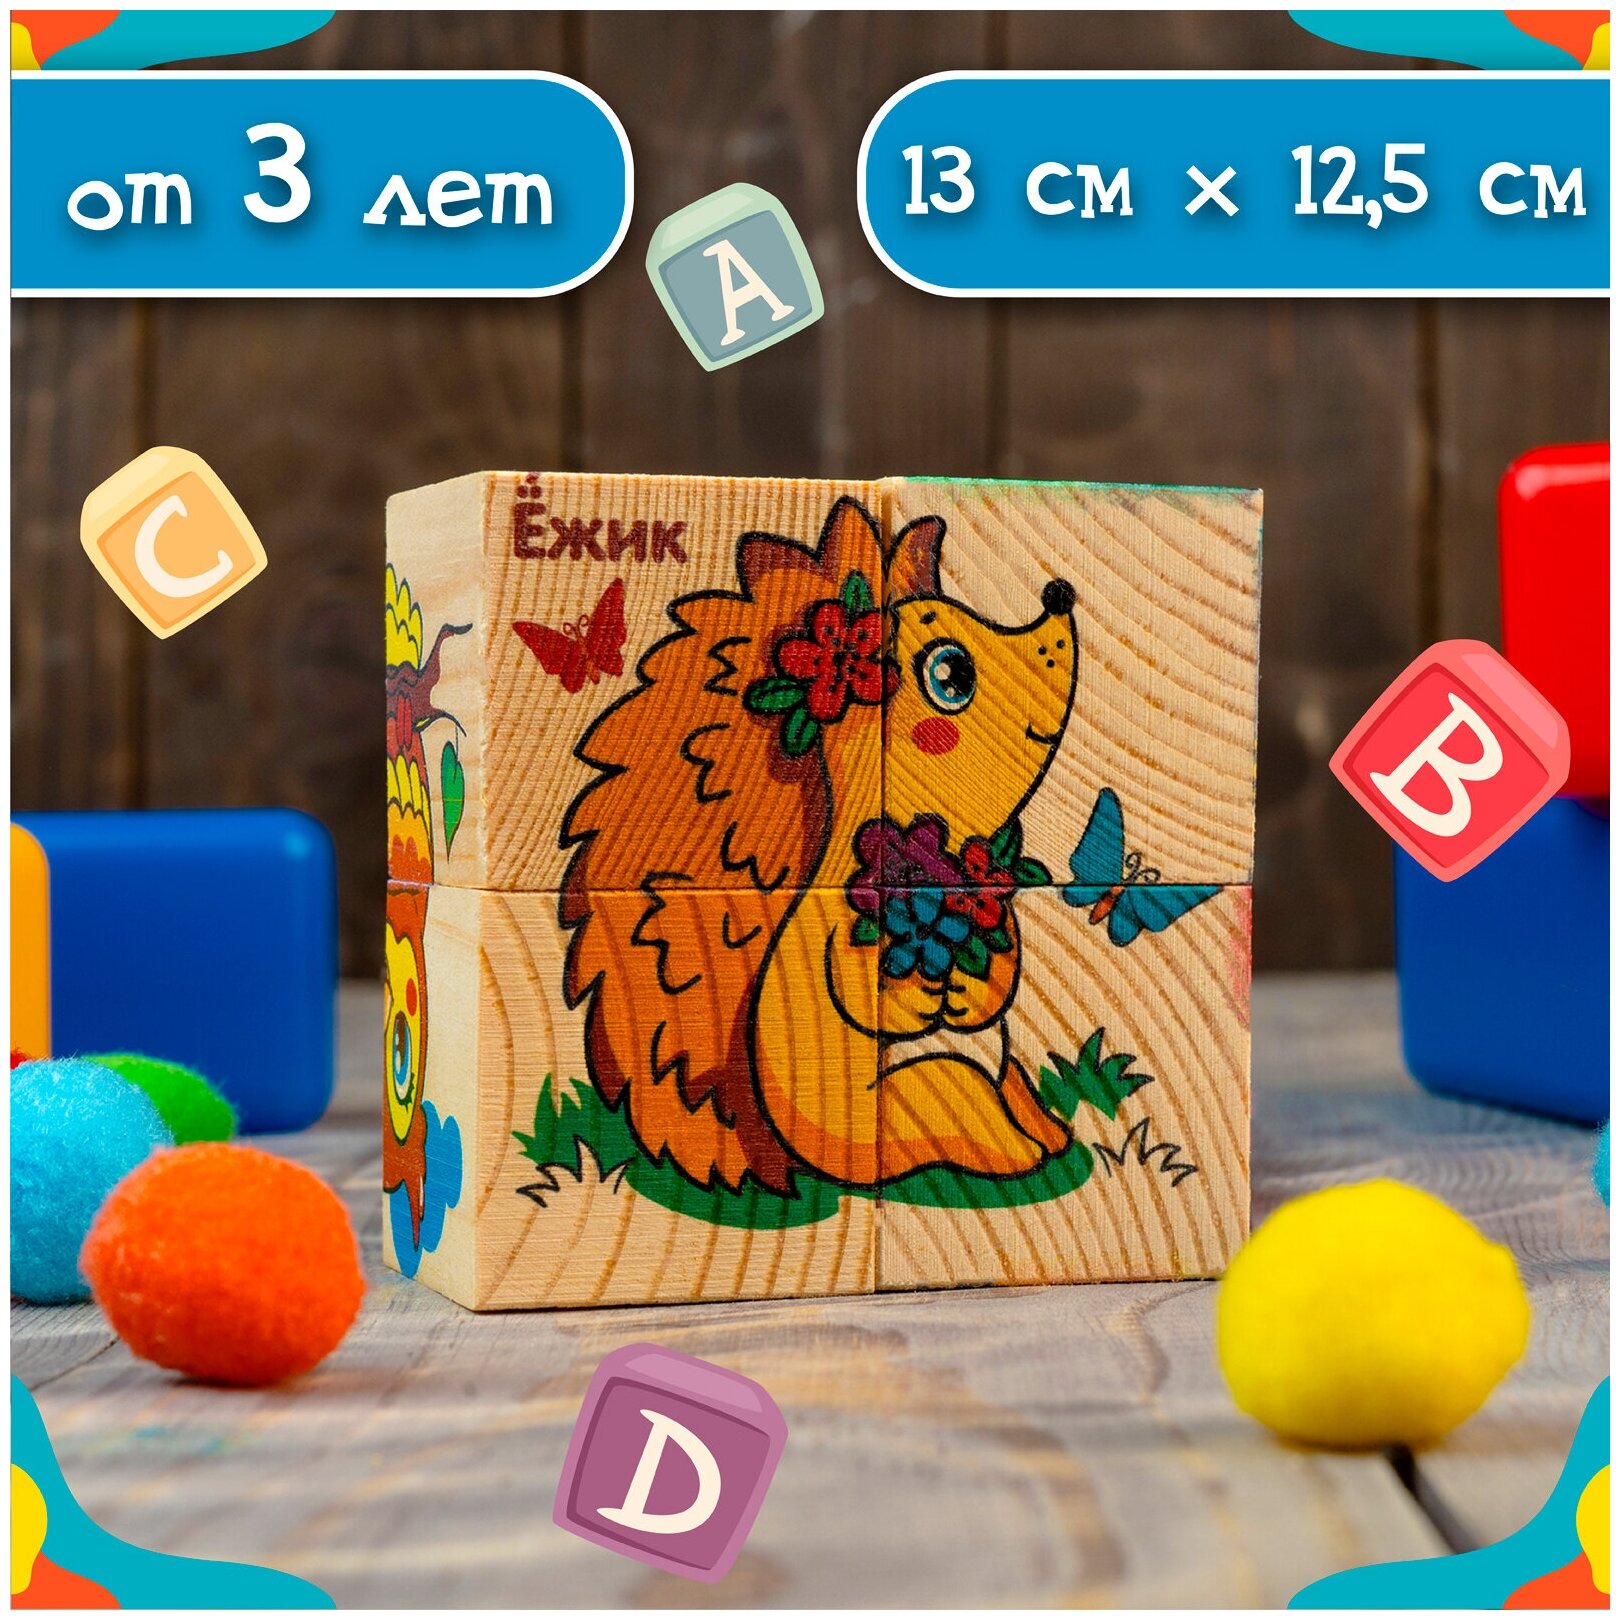 Кубики деревянные «Учим животных», набор 4 шт.